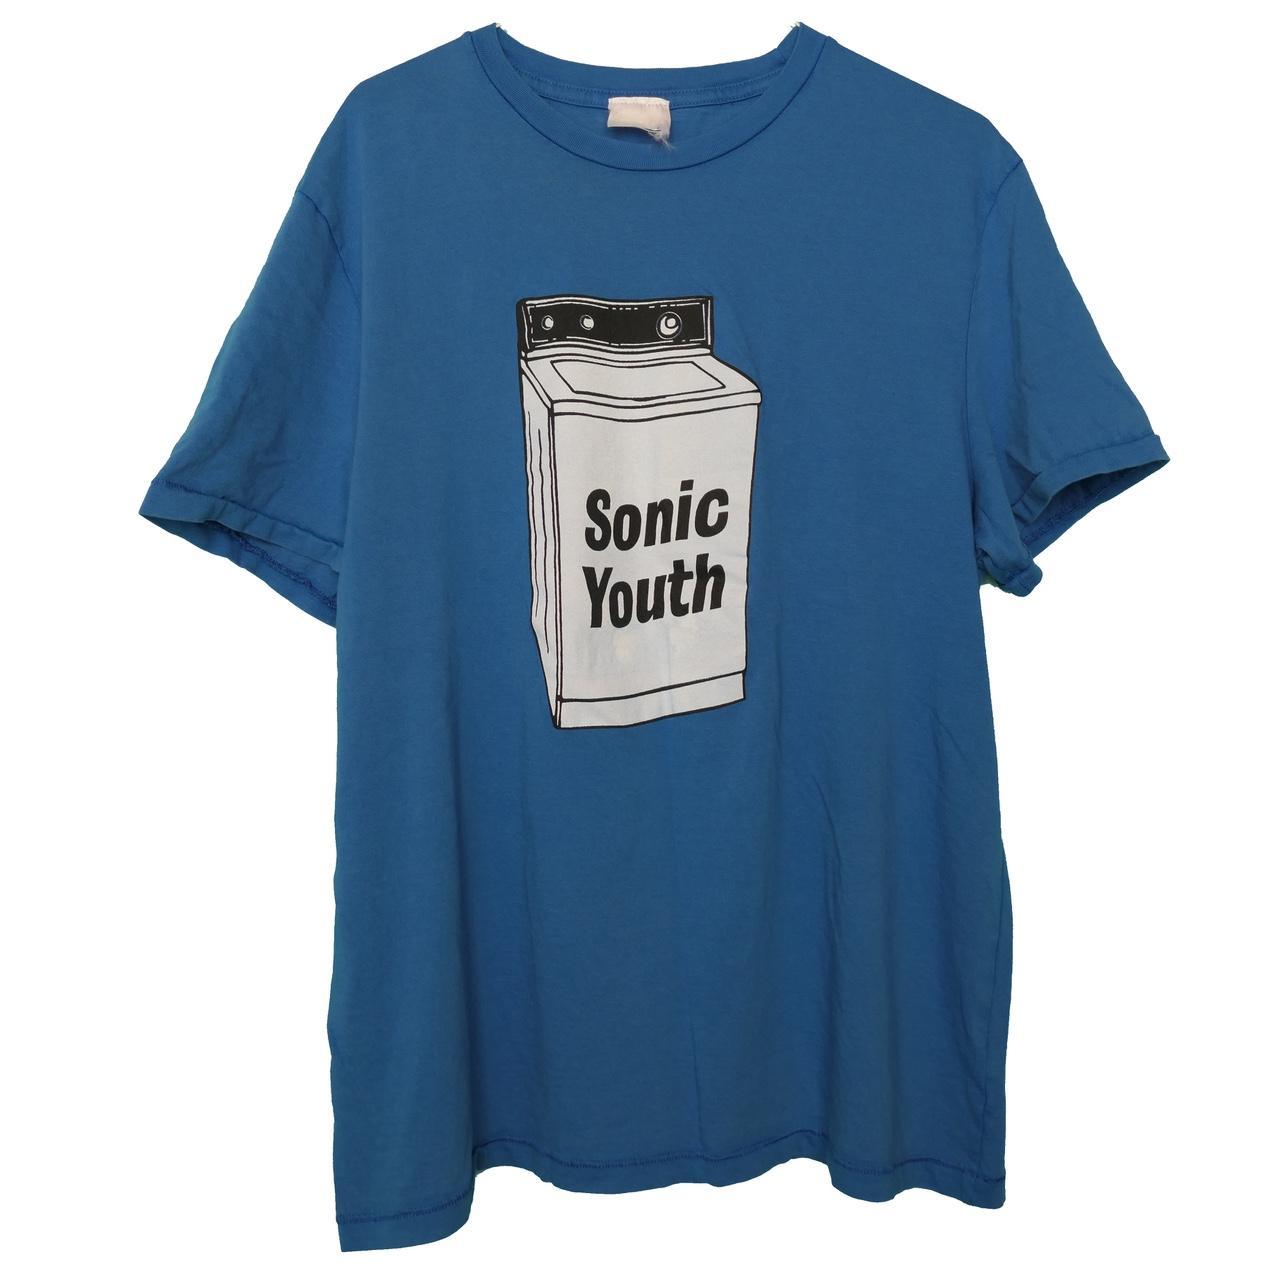 Sonic Youth Washing Machine Laundry Grunge Band Tour... - Depop